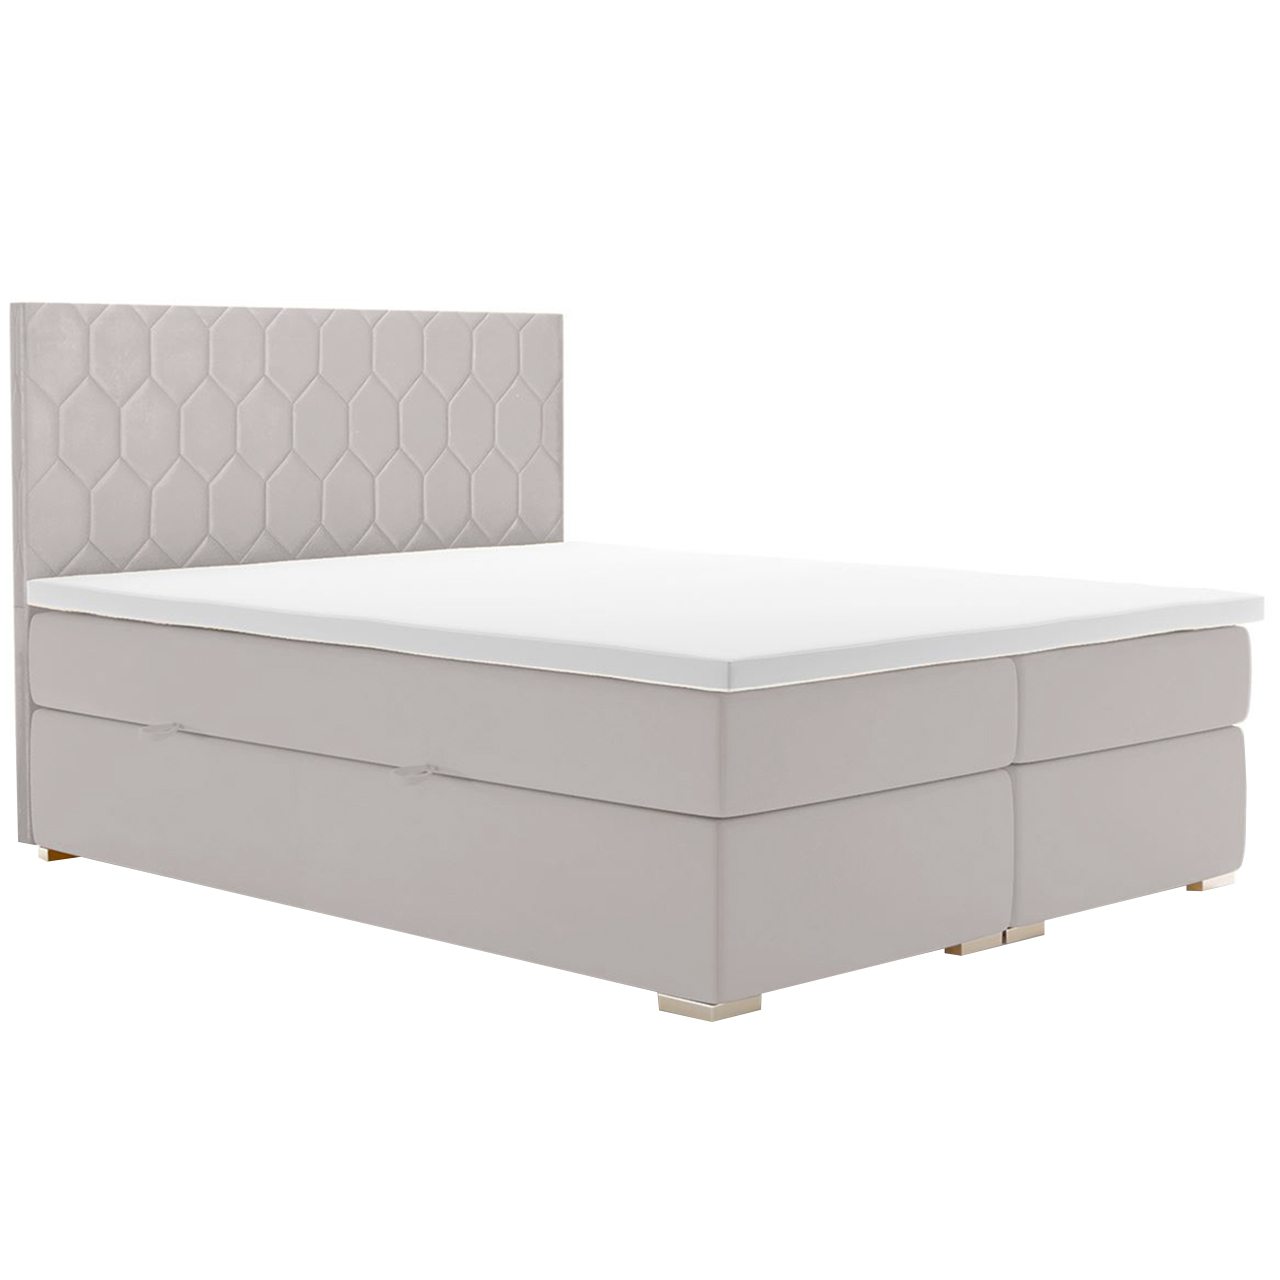 Upholstered bed PILATES 140x200 magic velvet 2218